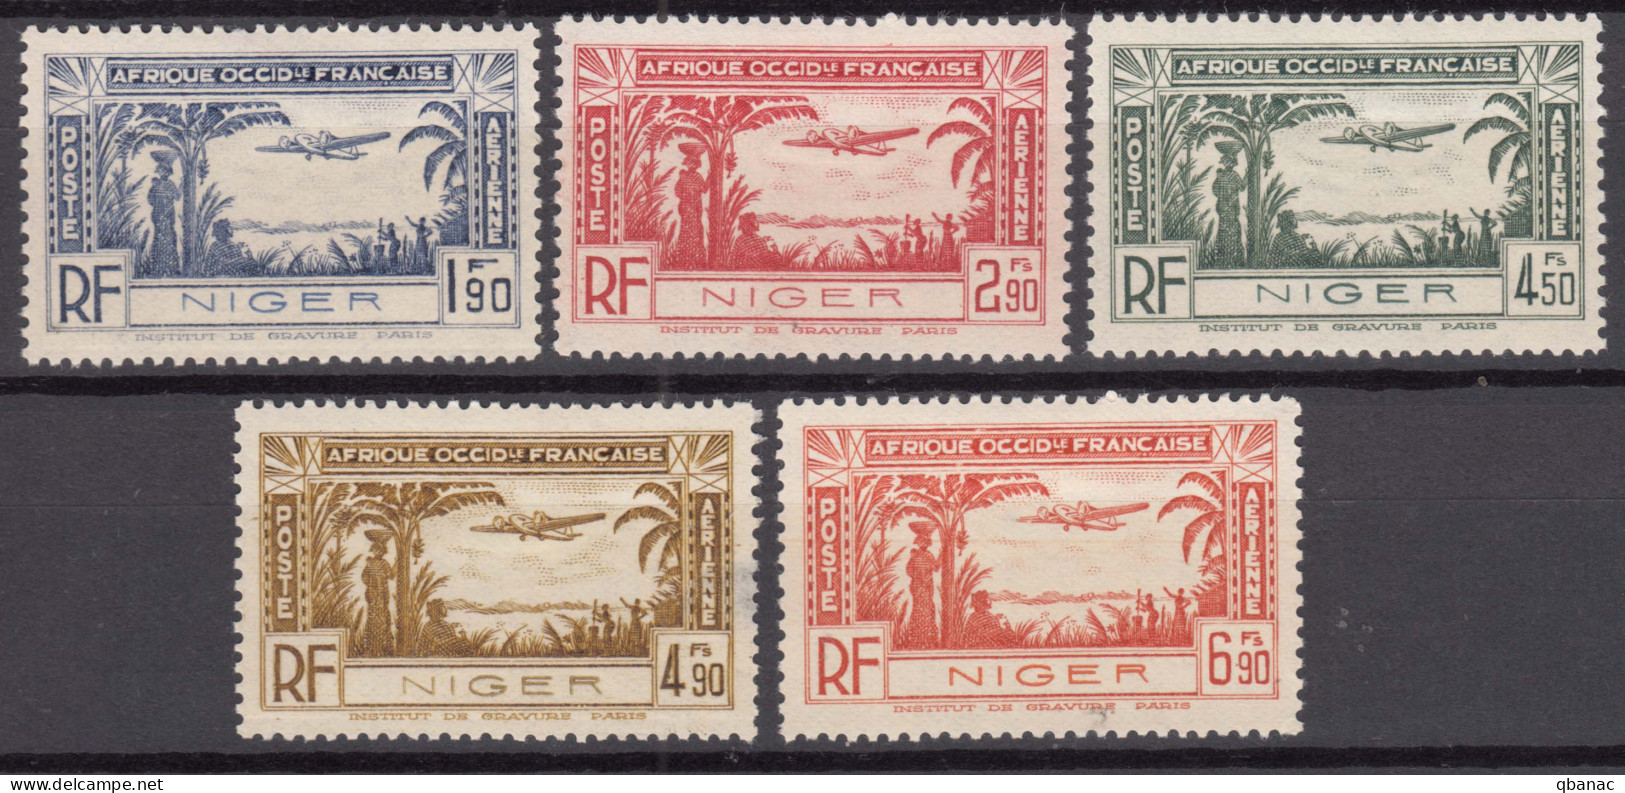 Niger 1940 Poste Aerienne Yvert#1-5 Mint Hinged - Unused Stamps